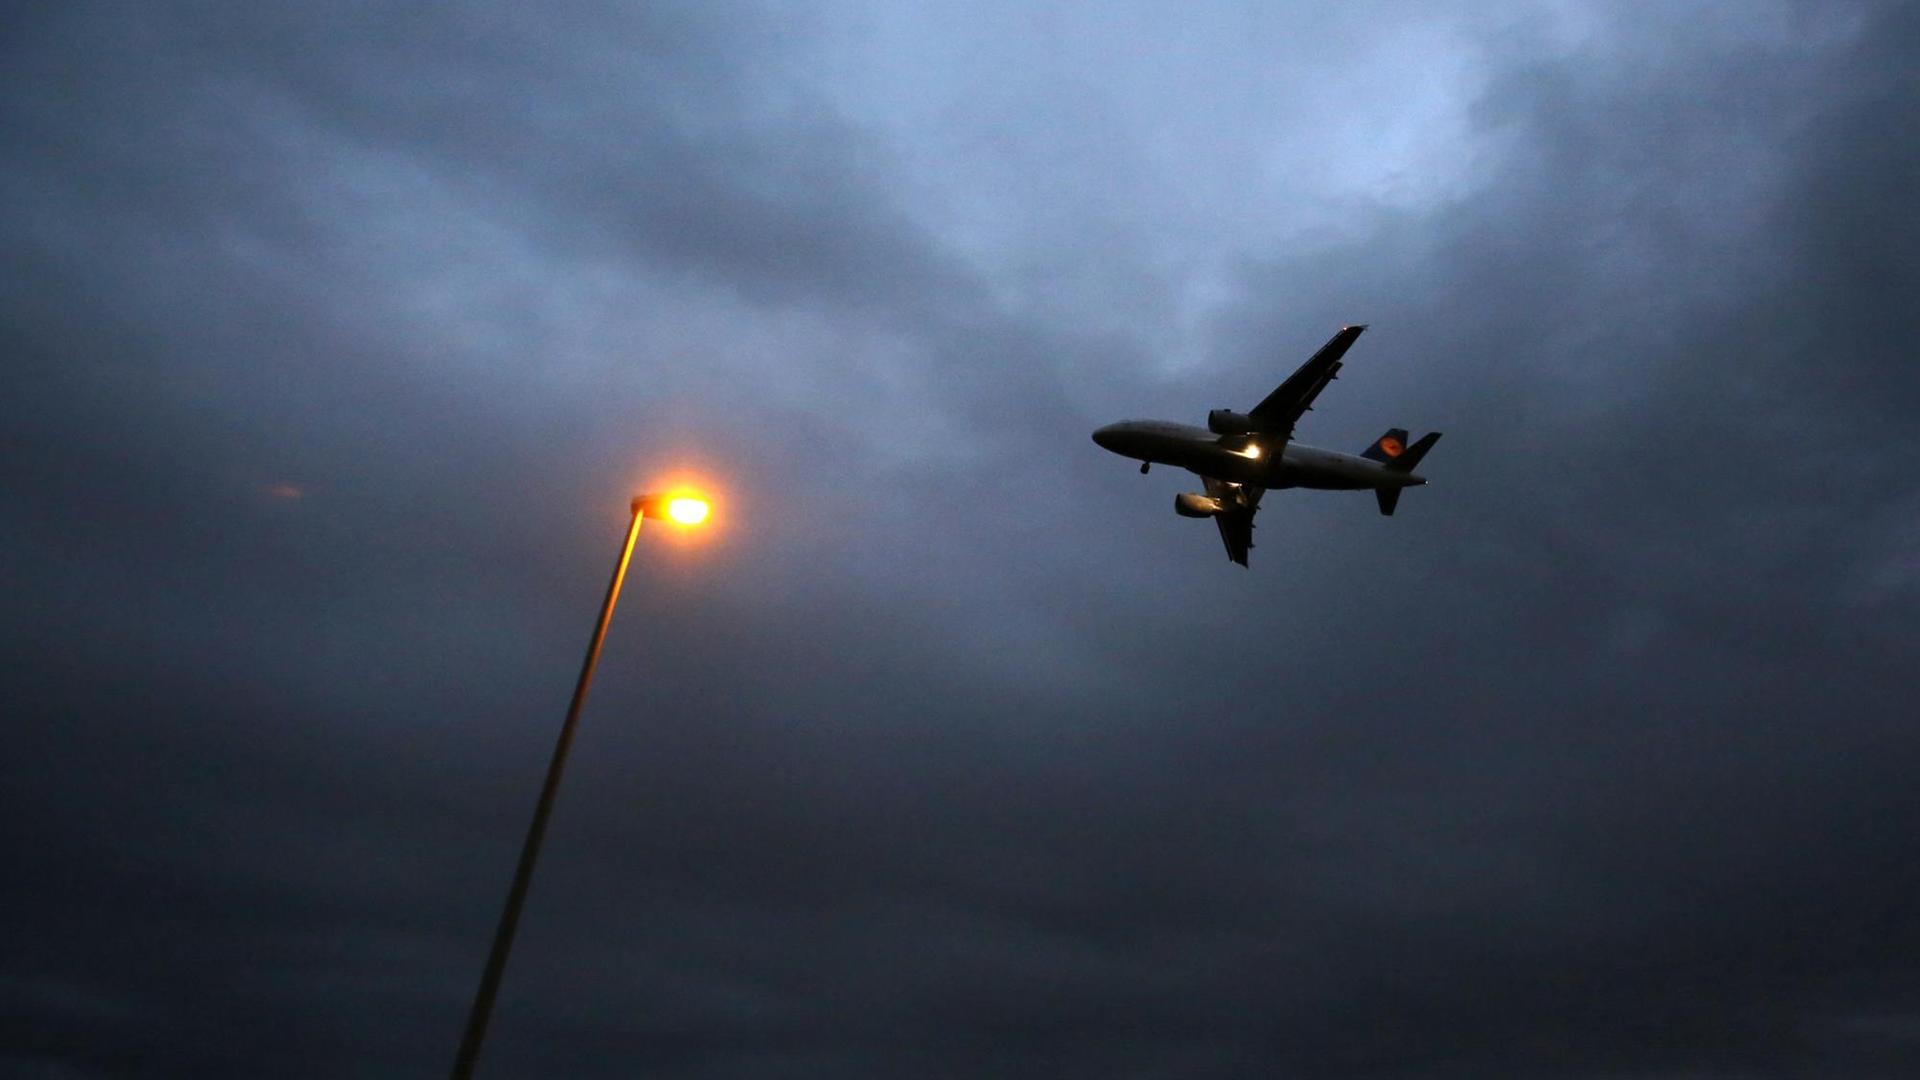 Ein Flugzeug der Lufthansa landet am 20.10.2014 am Flughafen in Frankfurt am Main (Hessen). Im Vordergrund ist eine Laterne zu sehen.